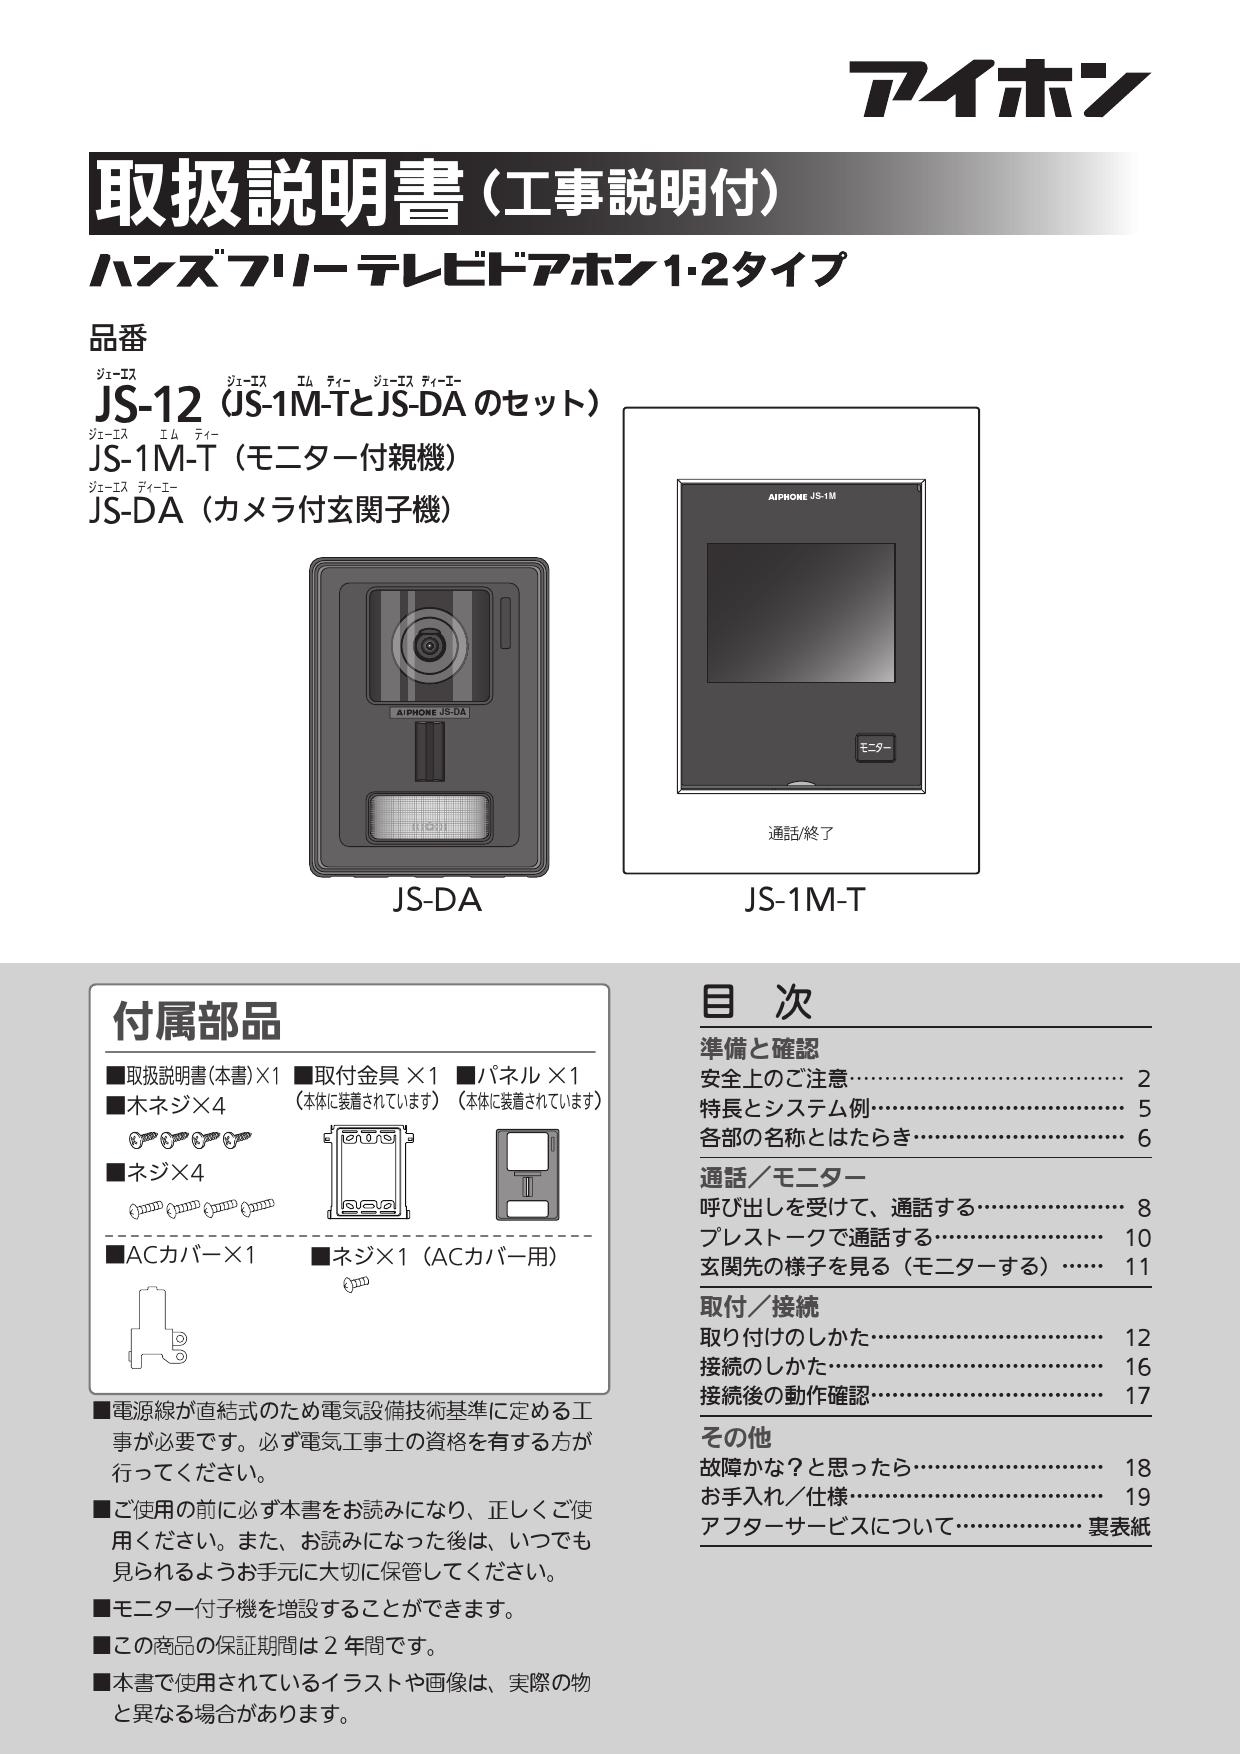 日本未発売 カラーテレビドアホン インターホン アイホン KL66 AC電源プラグ式